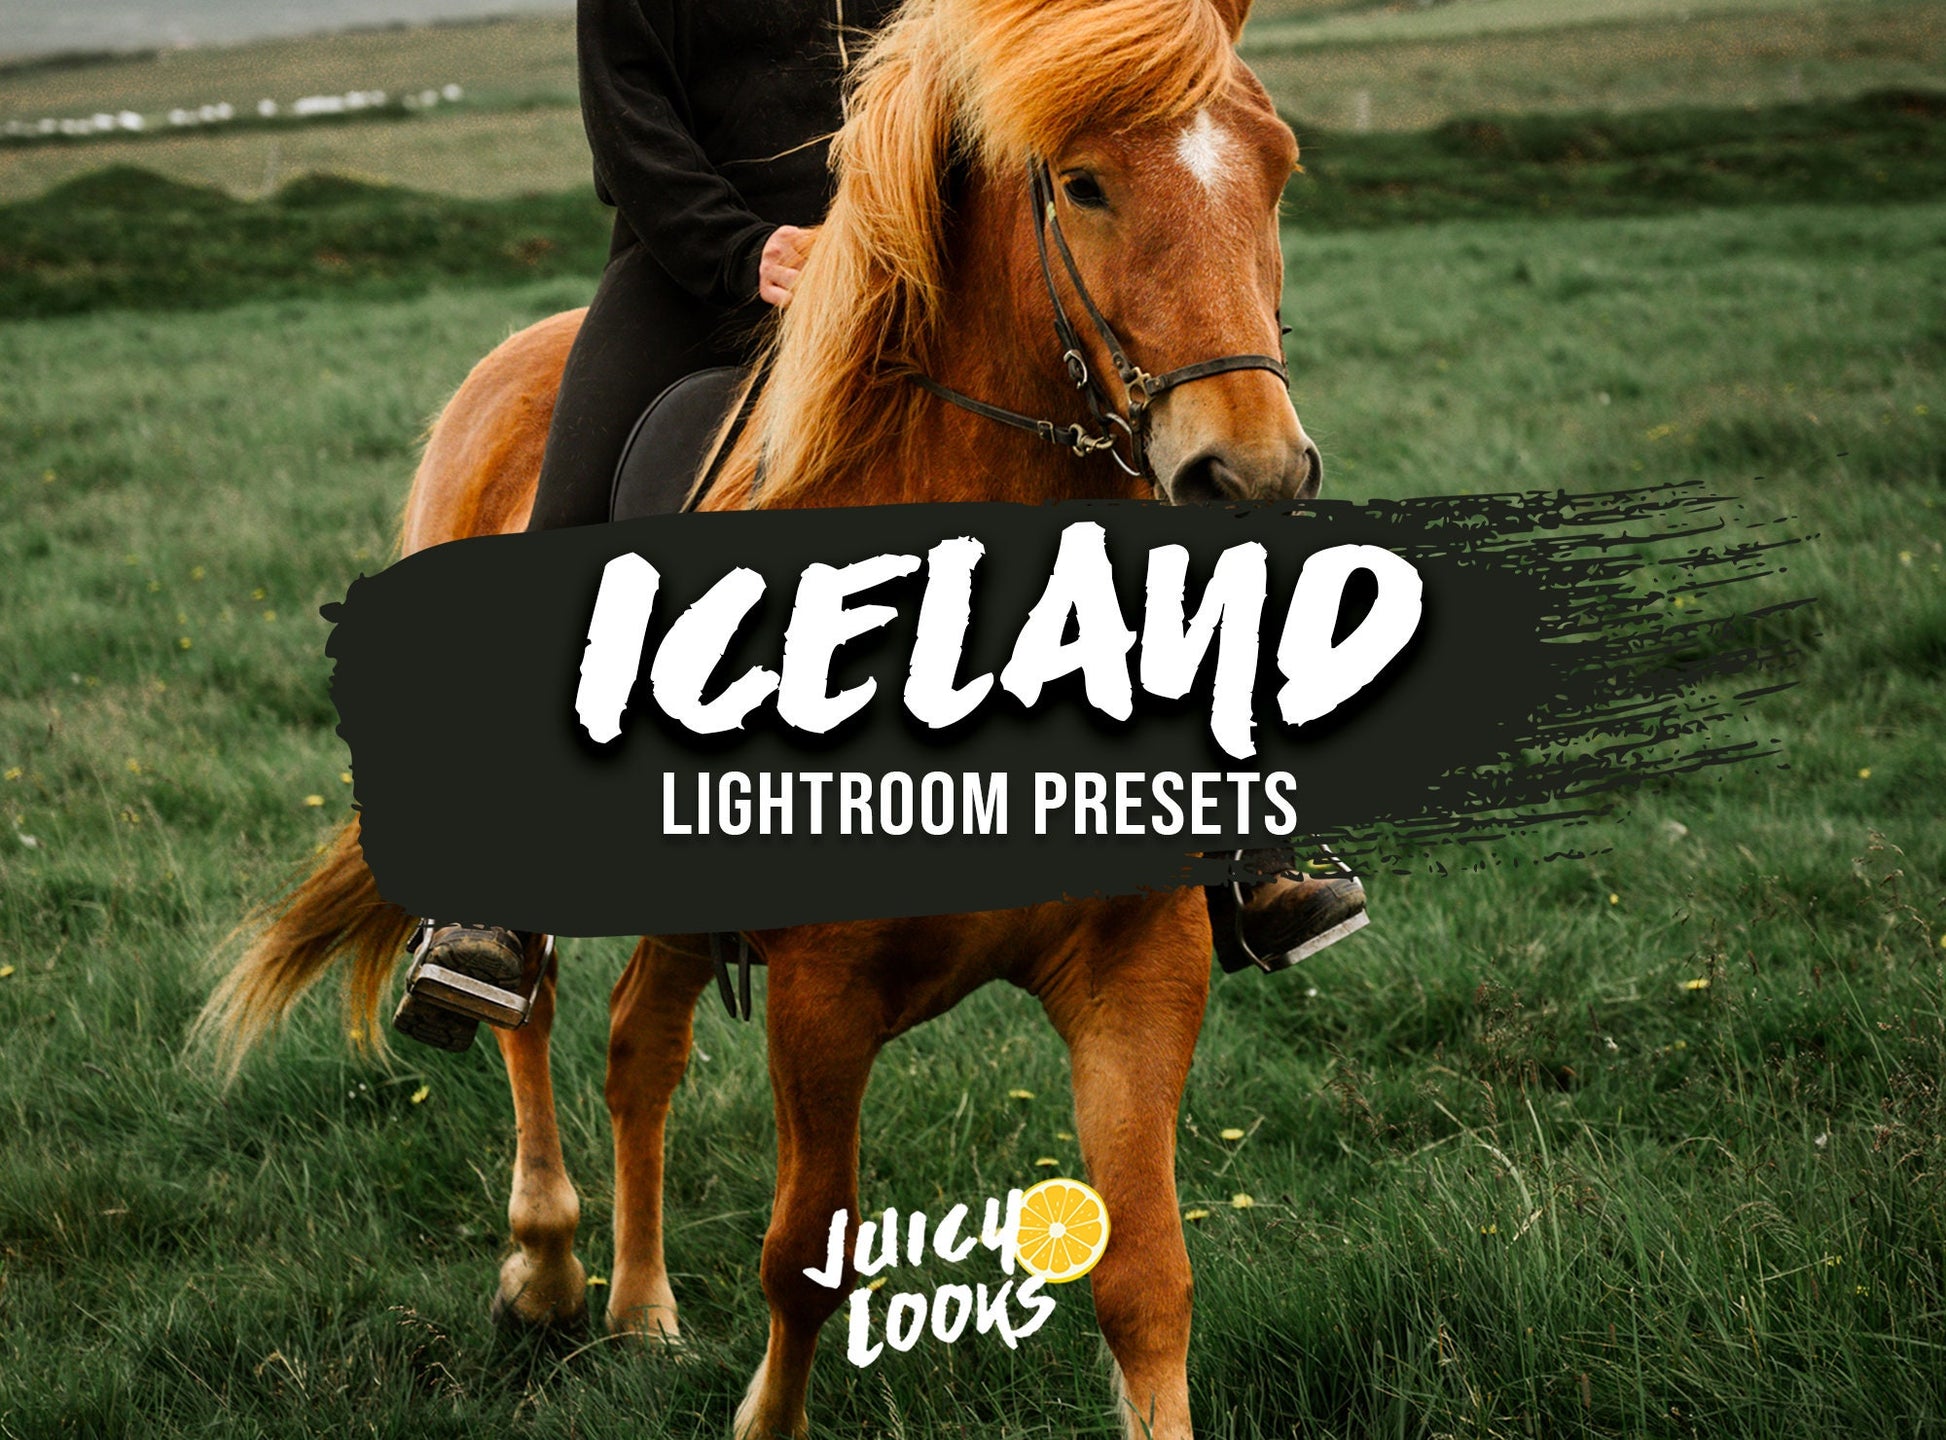 Iceland Lightroom Presets for Mobile & Desktop - Juicy Looks Presets